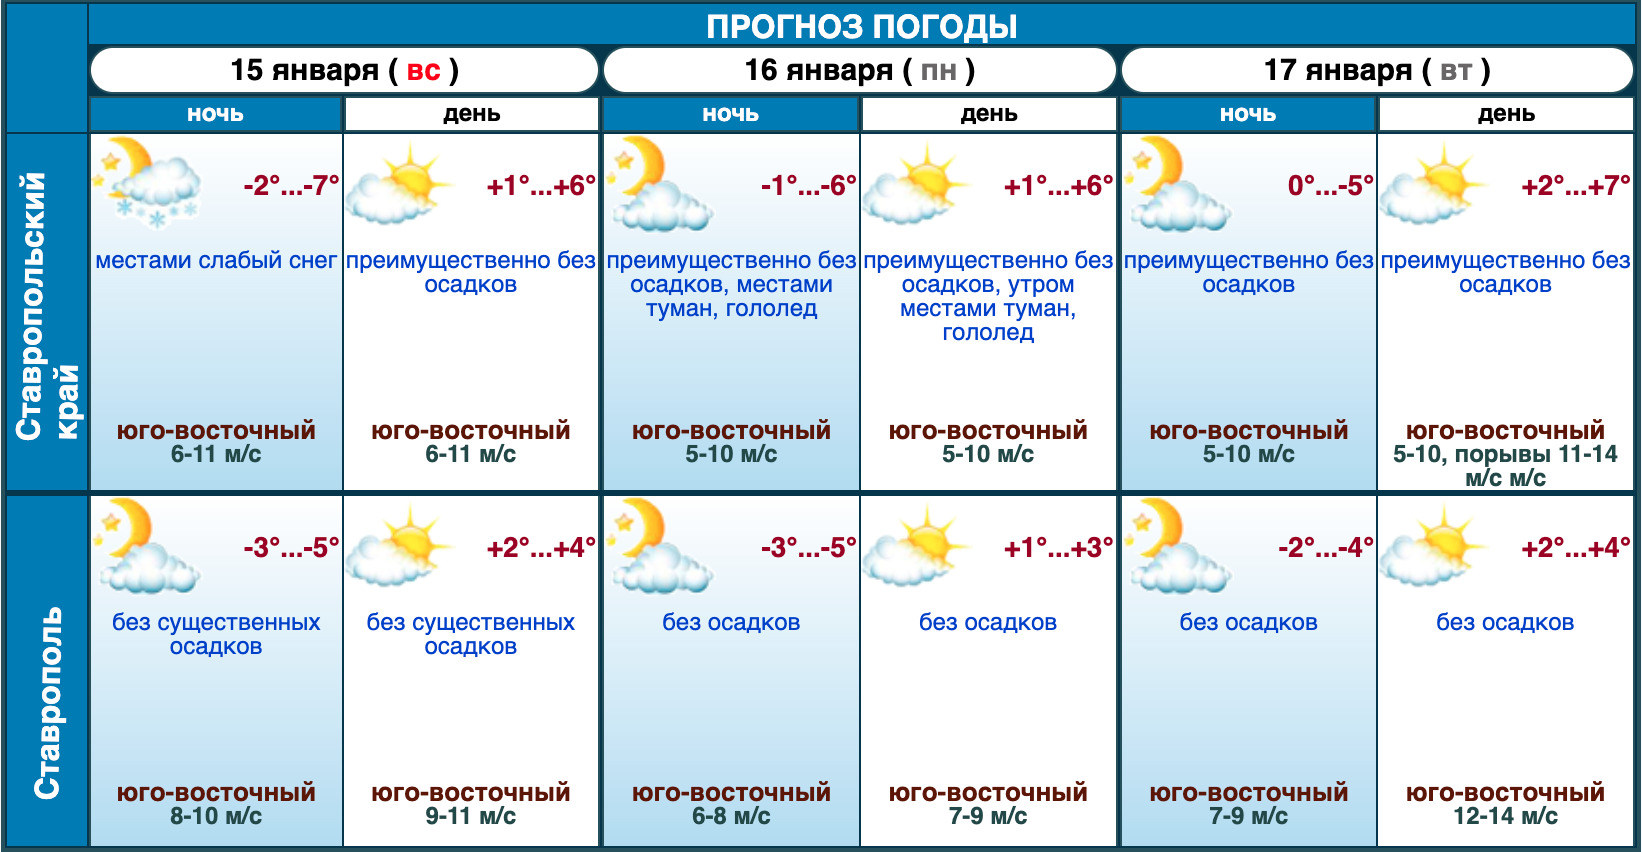 В пятигорске на 2 недели. Гидрометцентр. Погода в Ставрополе. Погода в Ставрополе на 10 дней. Град прогноз погоды.